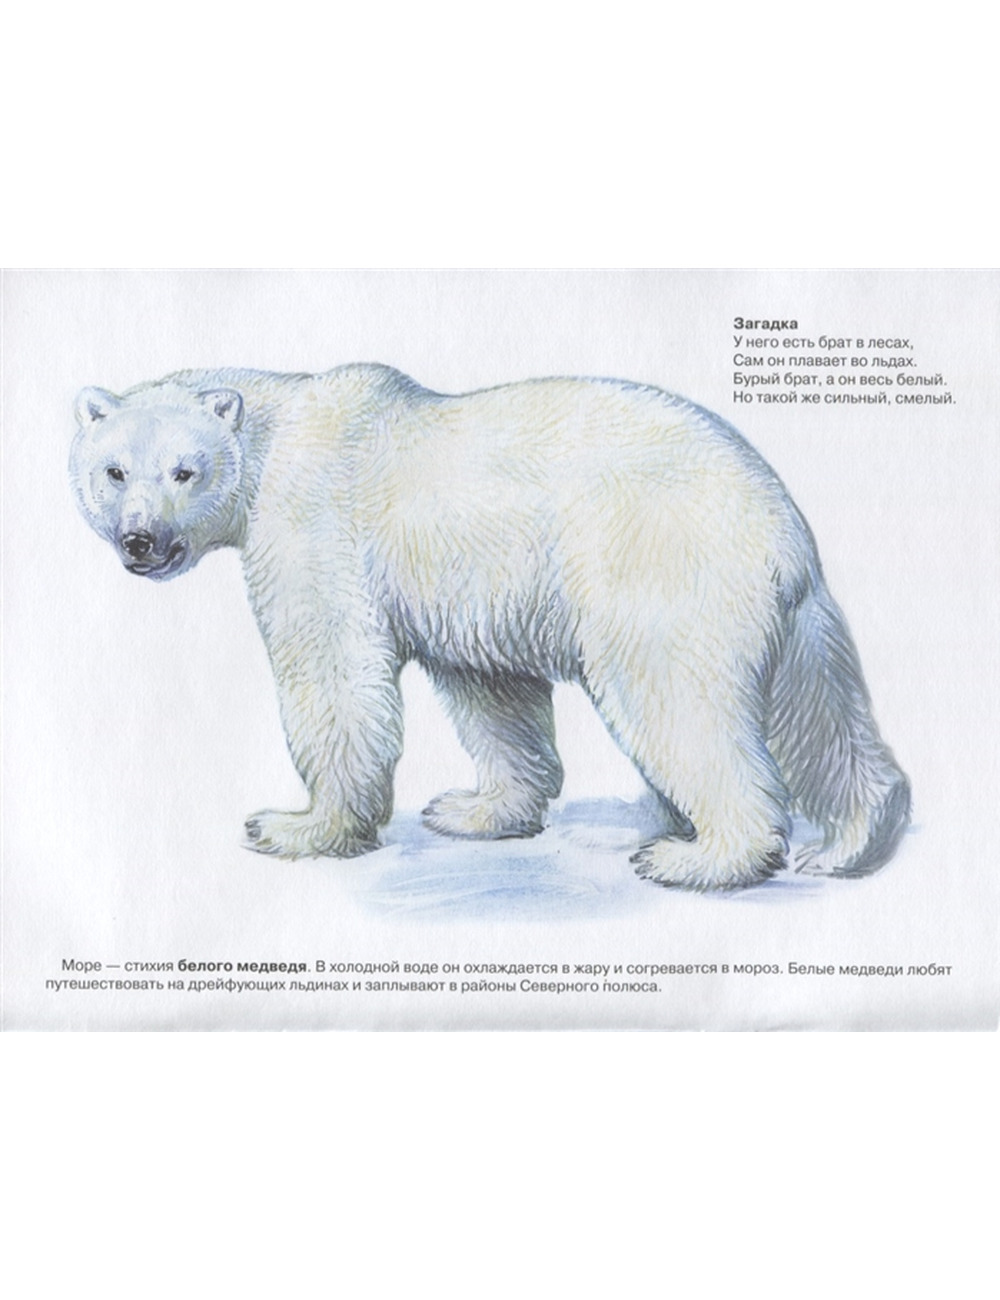 Дидактический материал животные Арктики